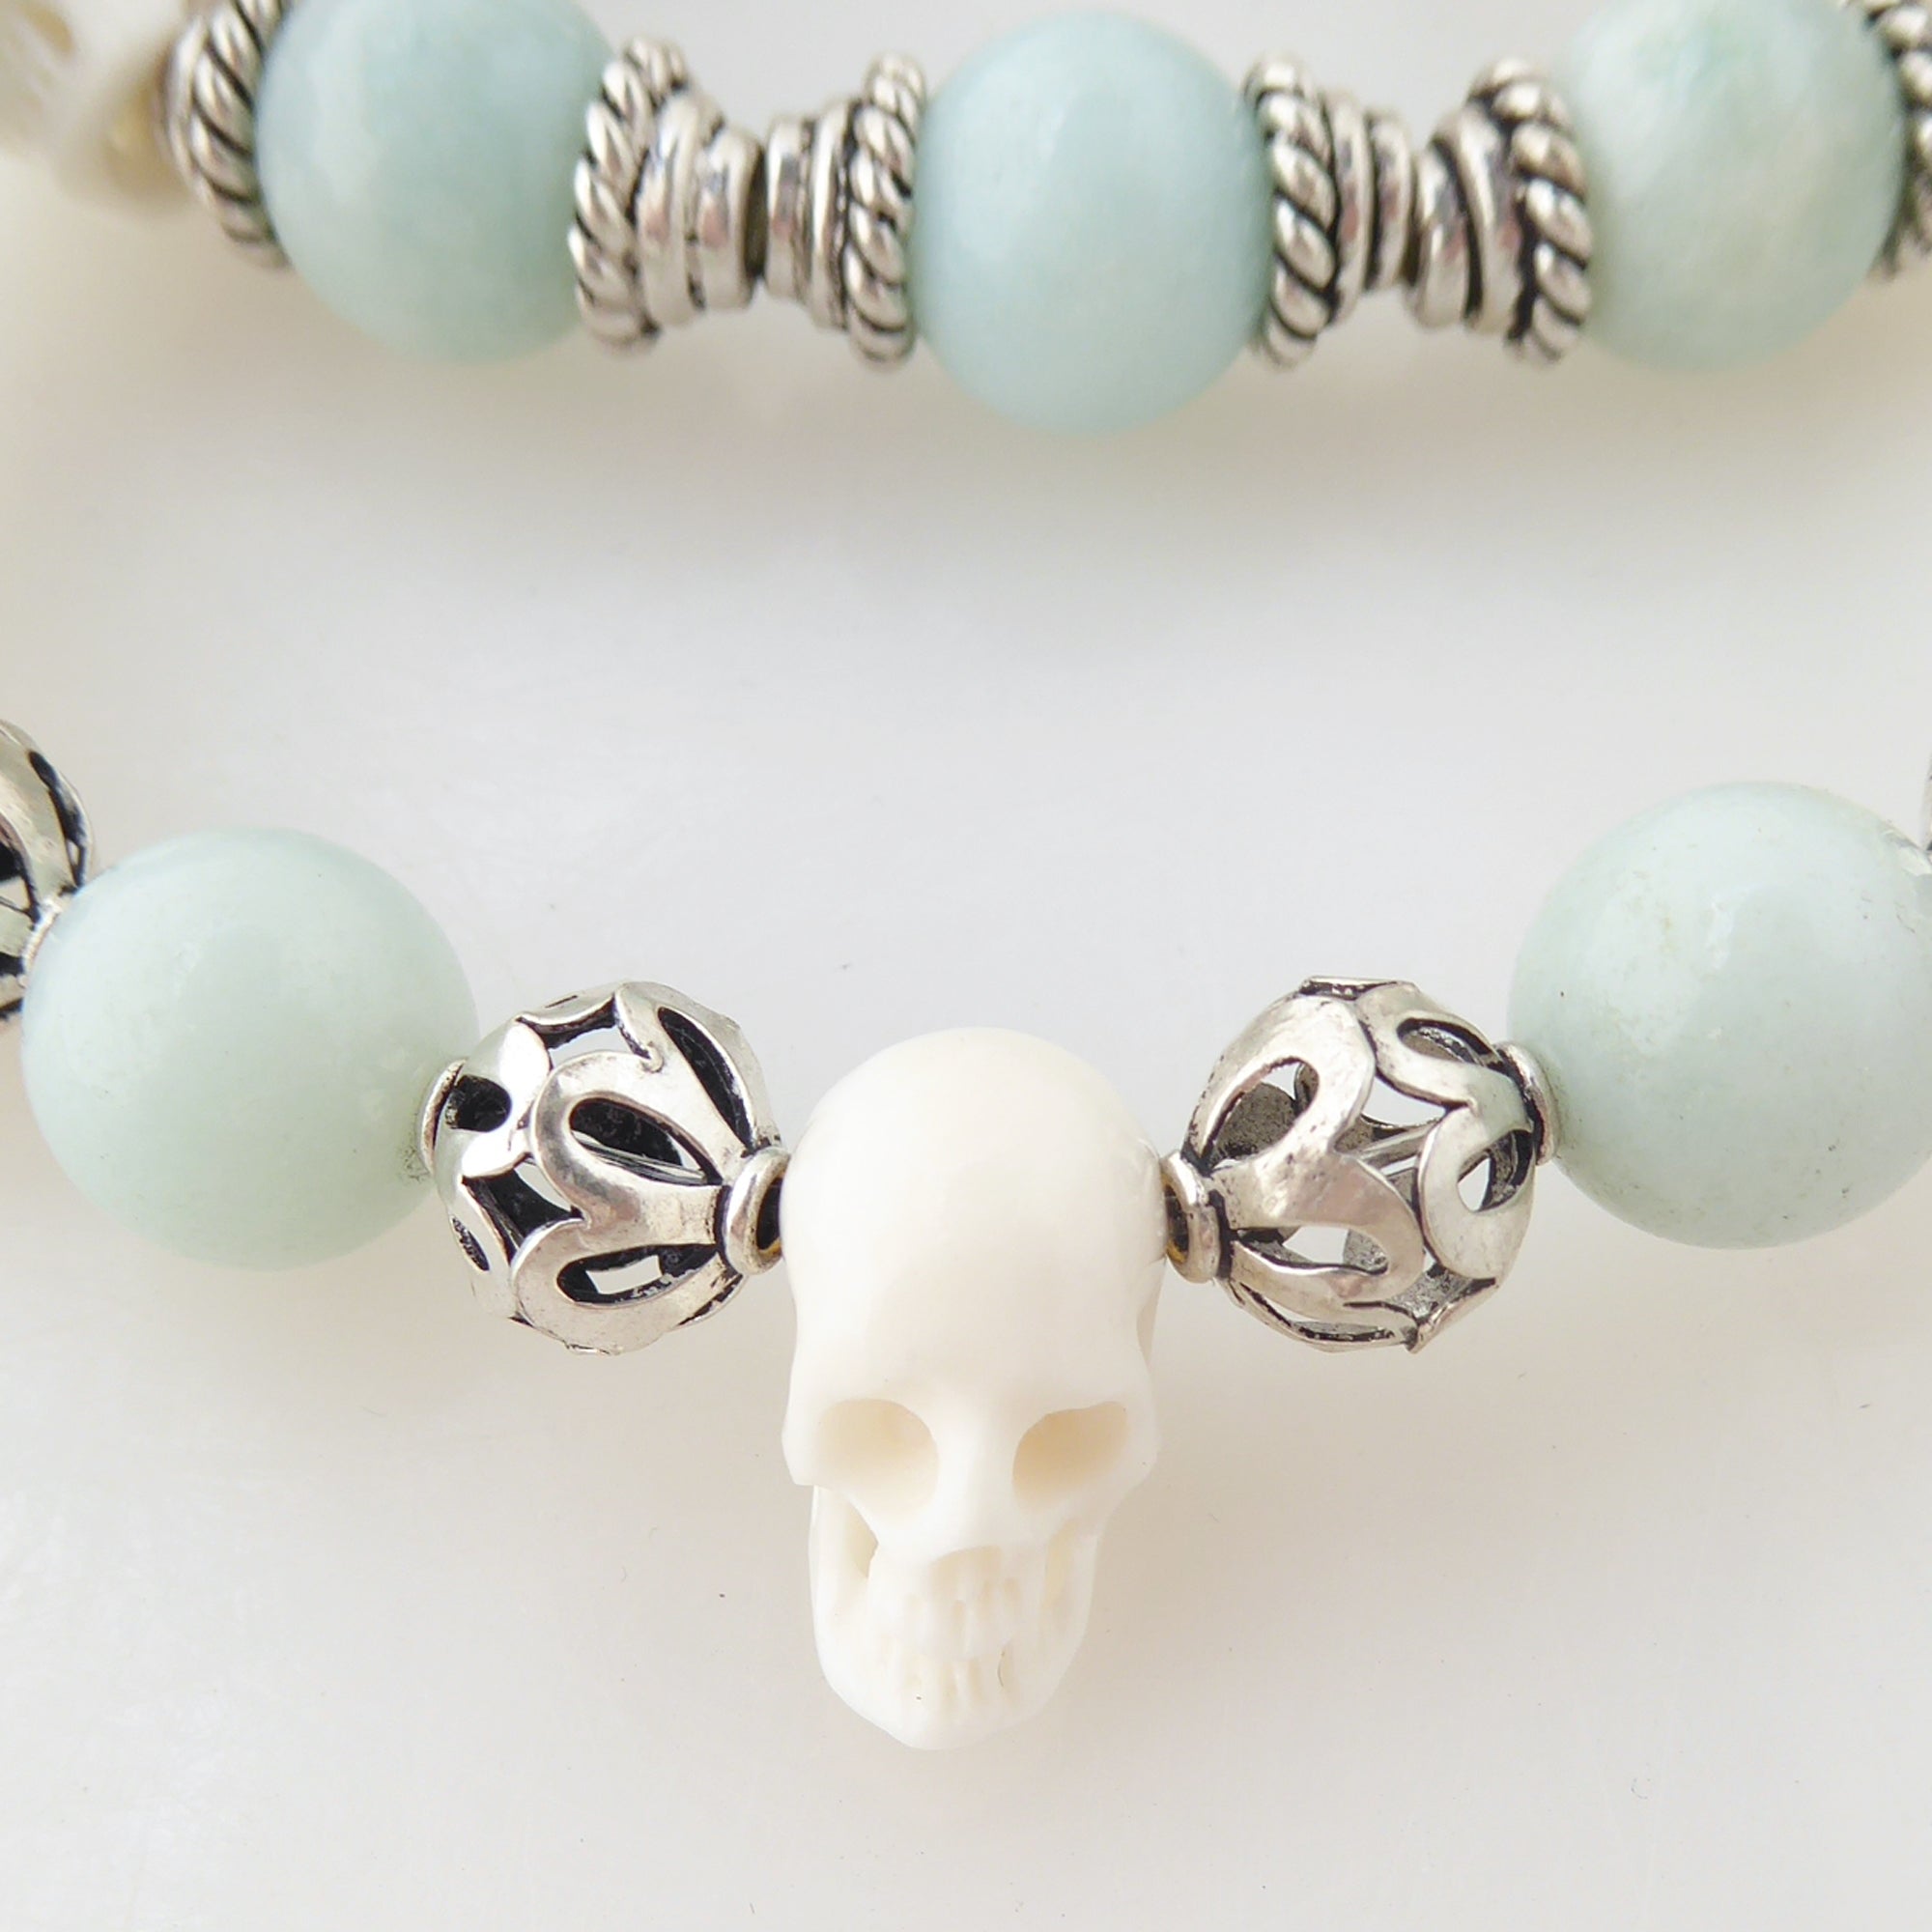 Jade and skull bracelet set by Jenny Dayco 4